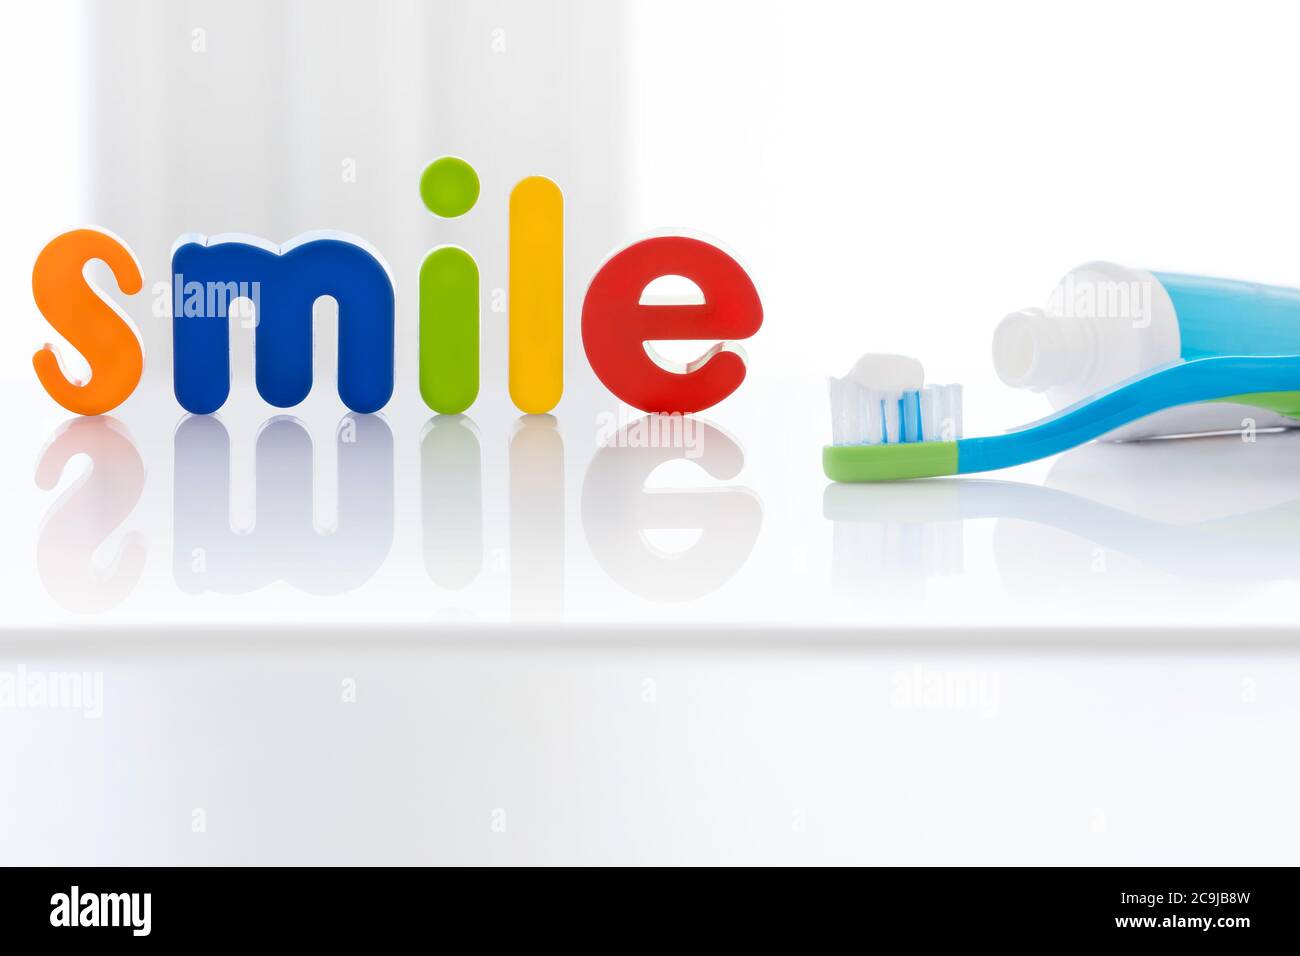 La parola "sorriso" in lettere multicolore con uno spazzolino da denti, su sfondo bianco. Foto Stock